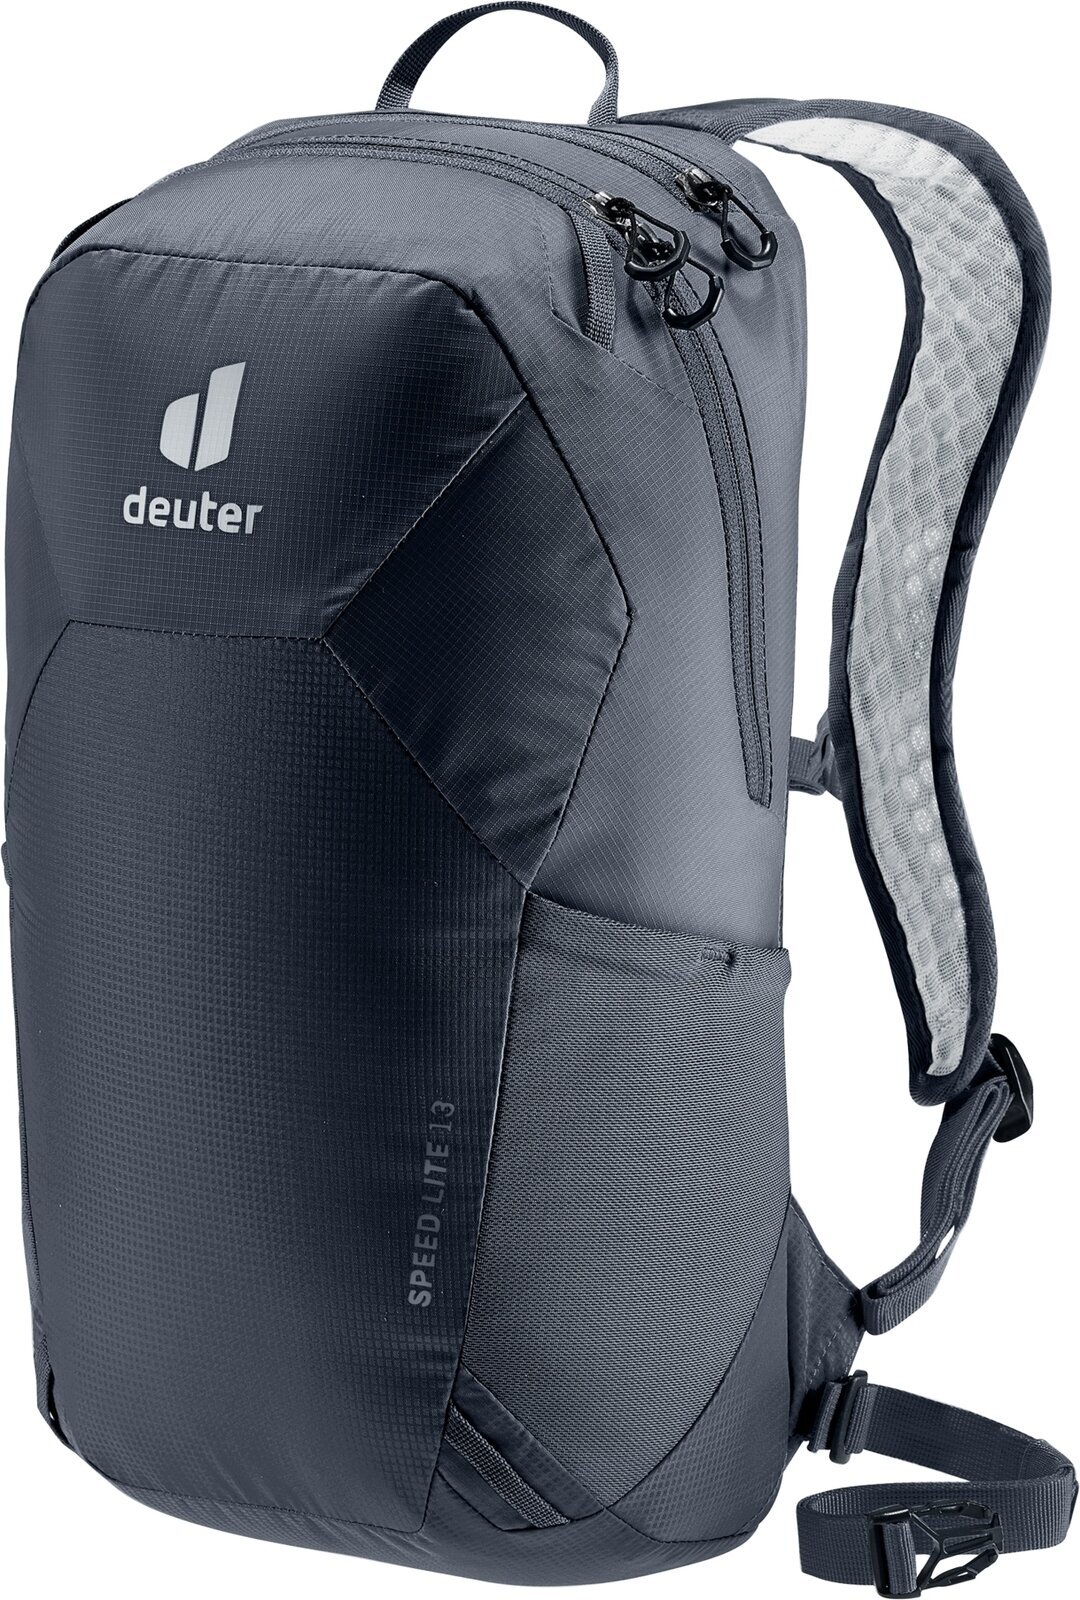 Outdoor Backpack Deuter Speed Lite 13 Black Outdoor Backpack